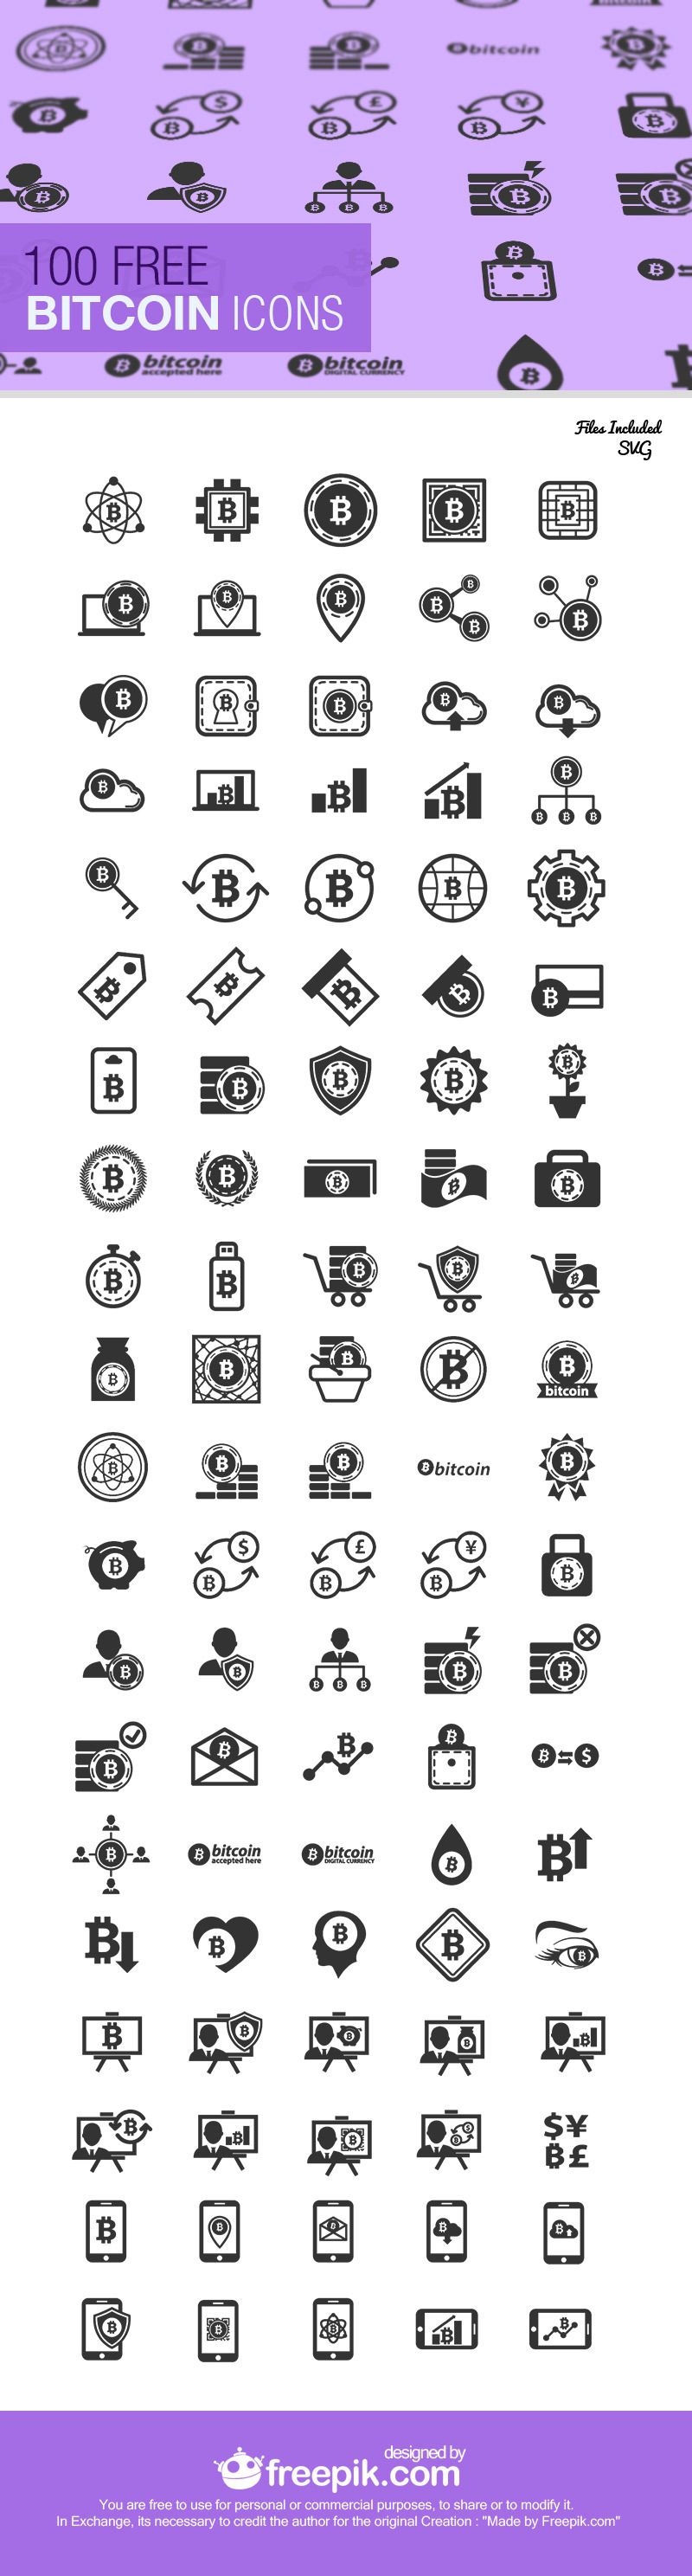 Coleção de ícones 100 Bitcoin